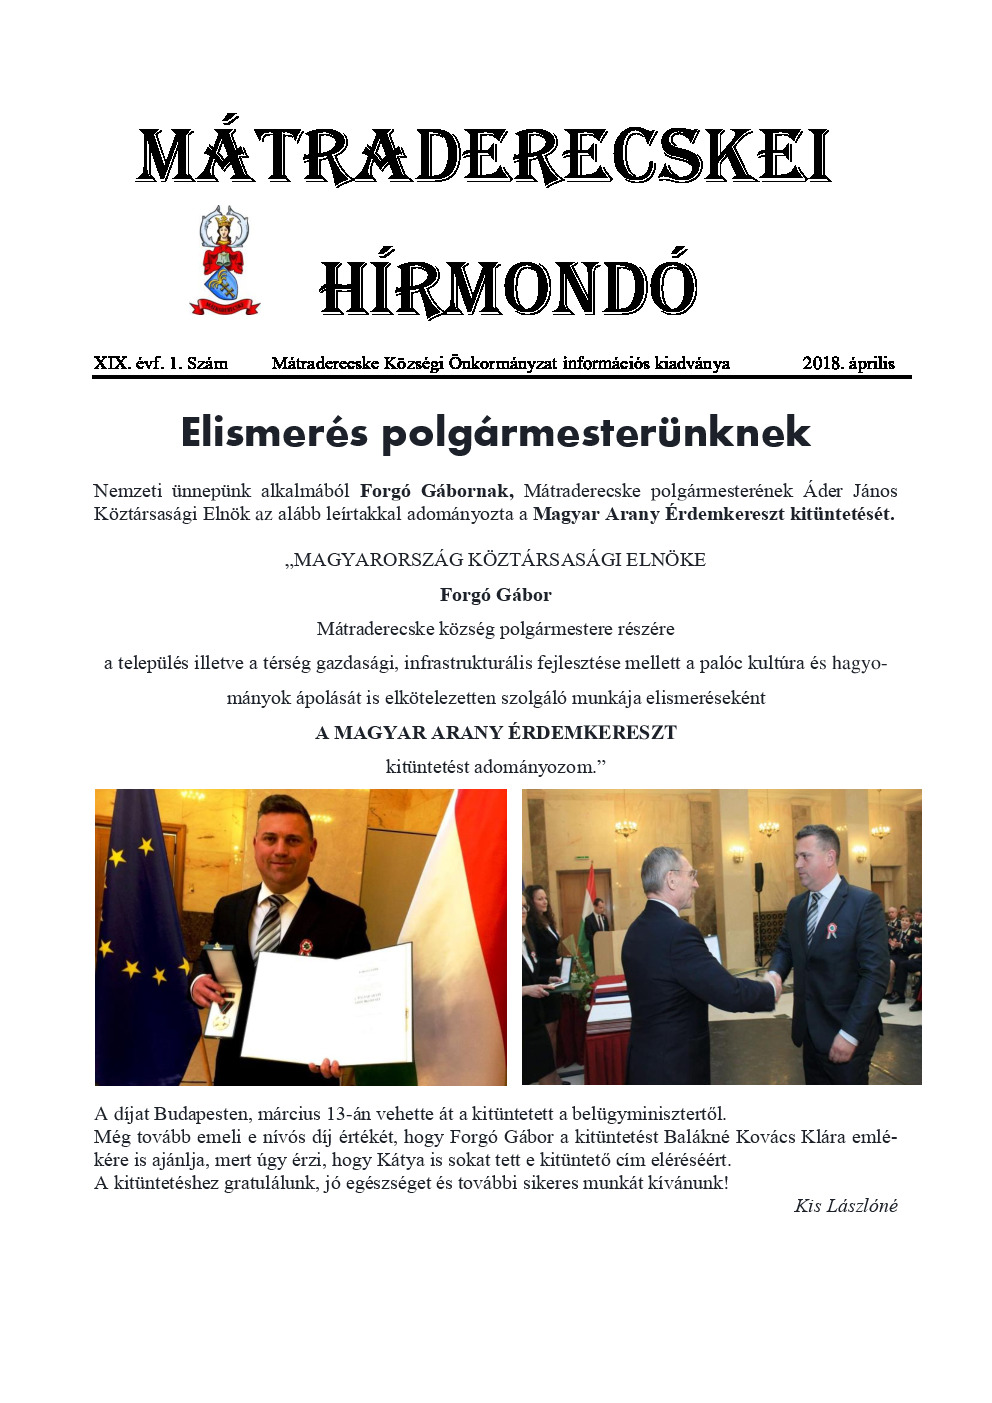 Mátraderecskei Hírmondó – 2018. április